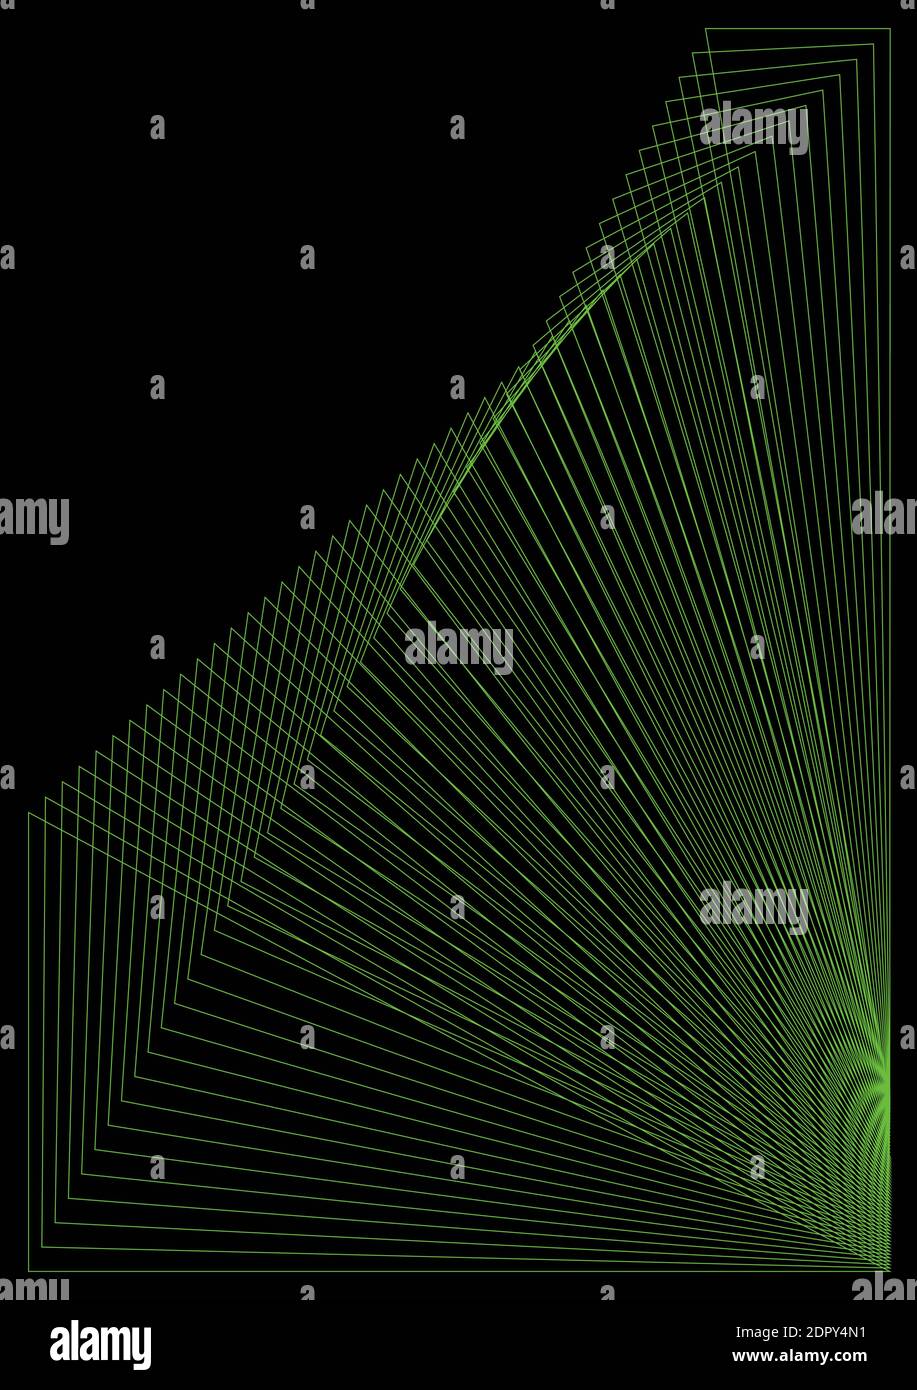 Vektor abstraktes Muster - geometrische Formen von grünen Linien auf Schwarzer Hintergrund Stock Vektor